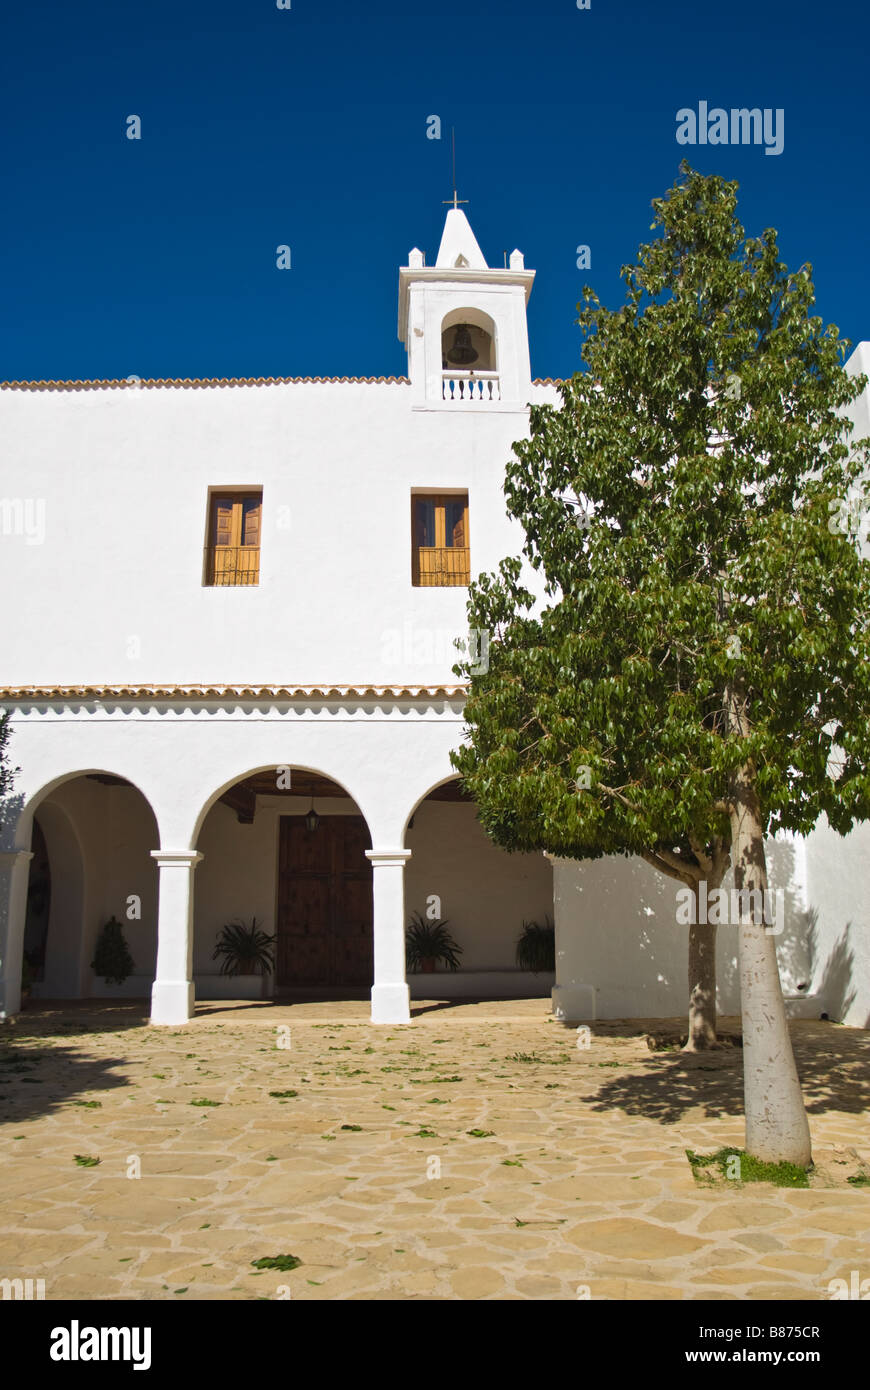 Façade of the Church of Sant Miquel de Balansat, Ibiza, Spain Stock Photo